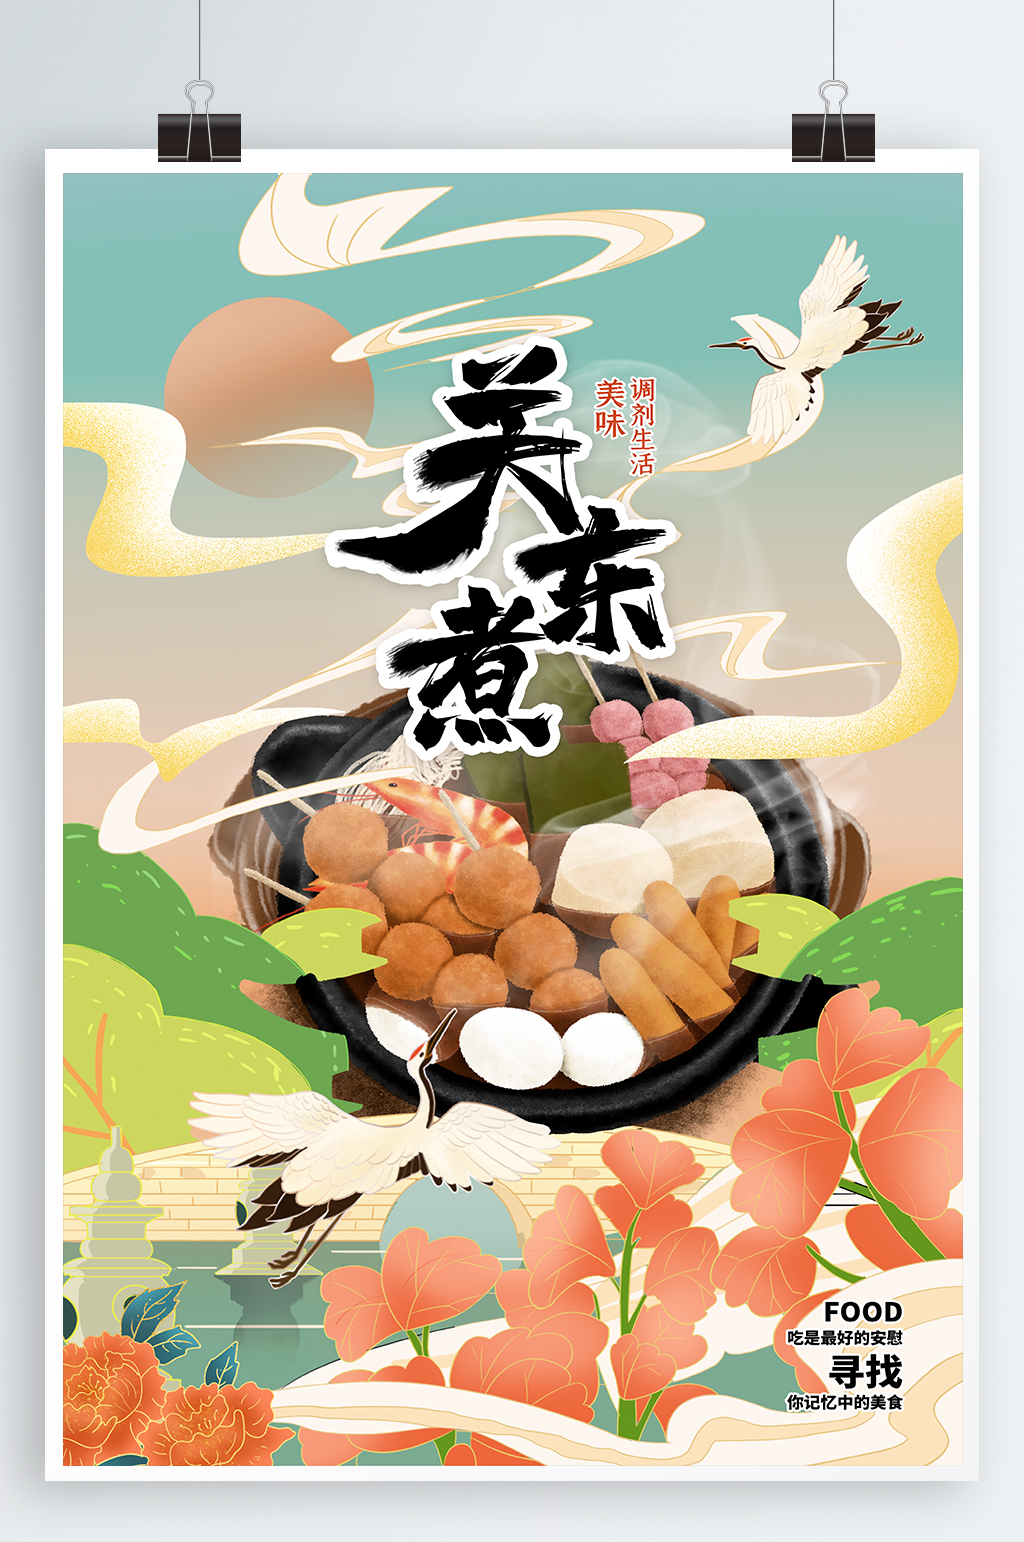 关东煮美食宣传海报素材免费下载,本作品是由紫妍上传的原创平面广告